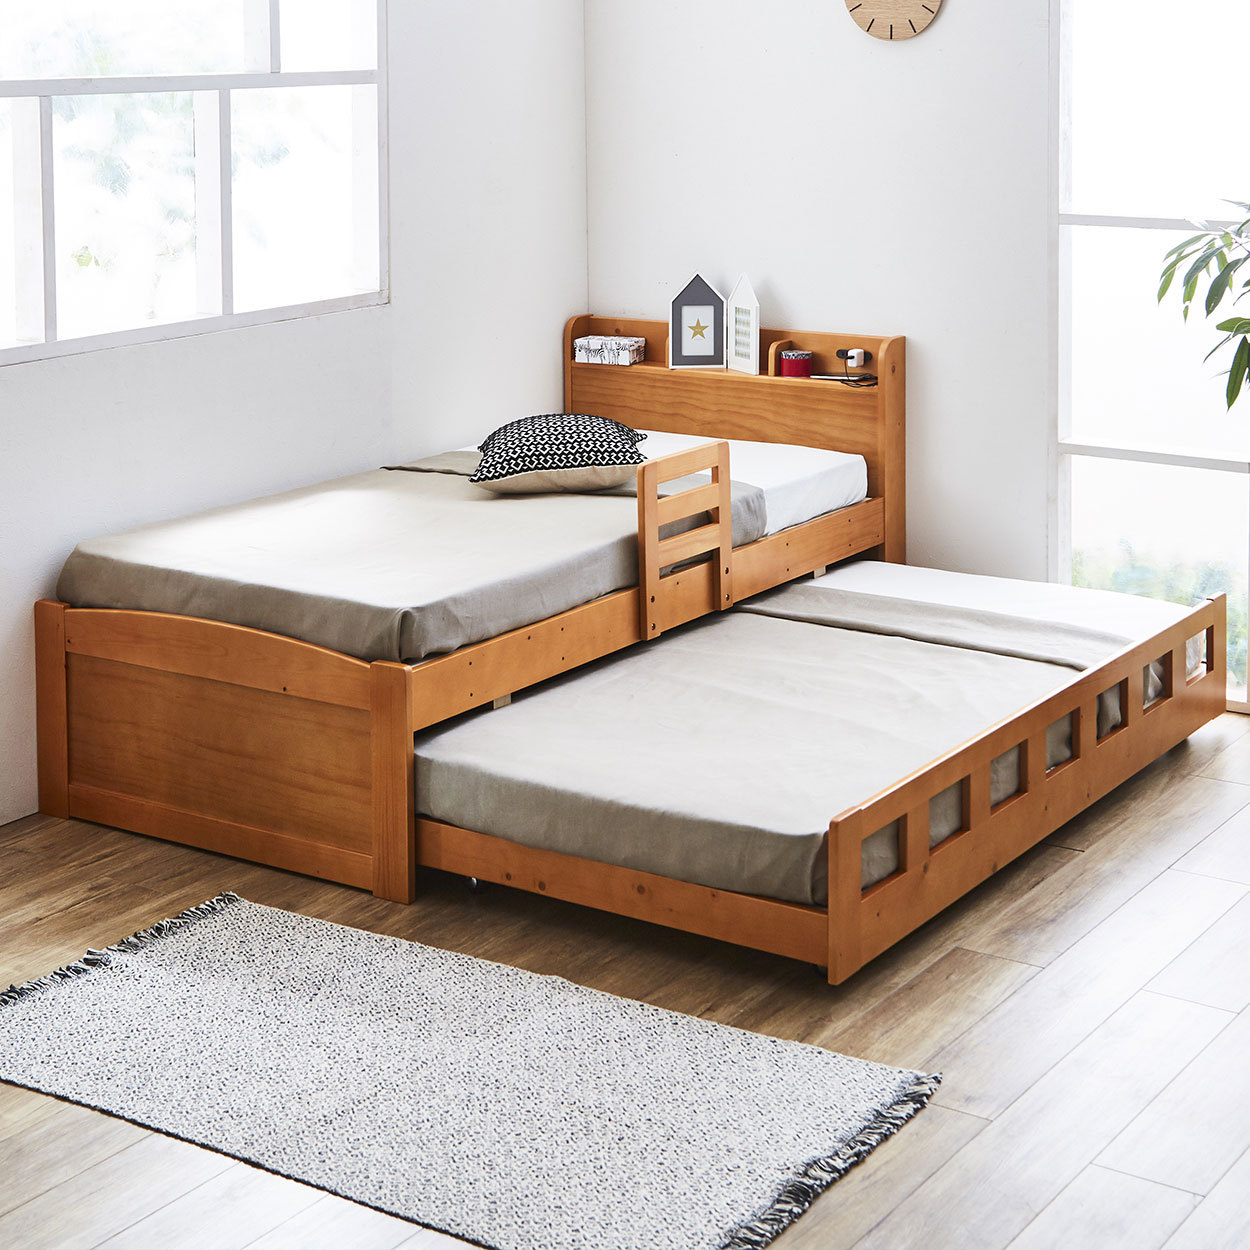 親子ベッド 2段ベッド シングル 木製 すのこ 棚付き 可動式サイドガード コンセント 低ホルムアル...